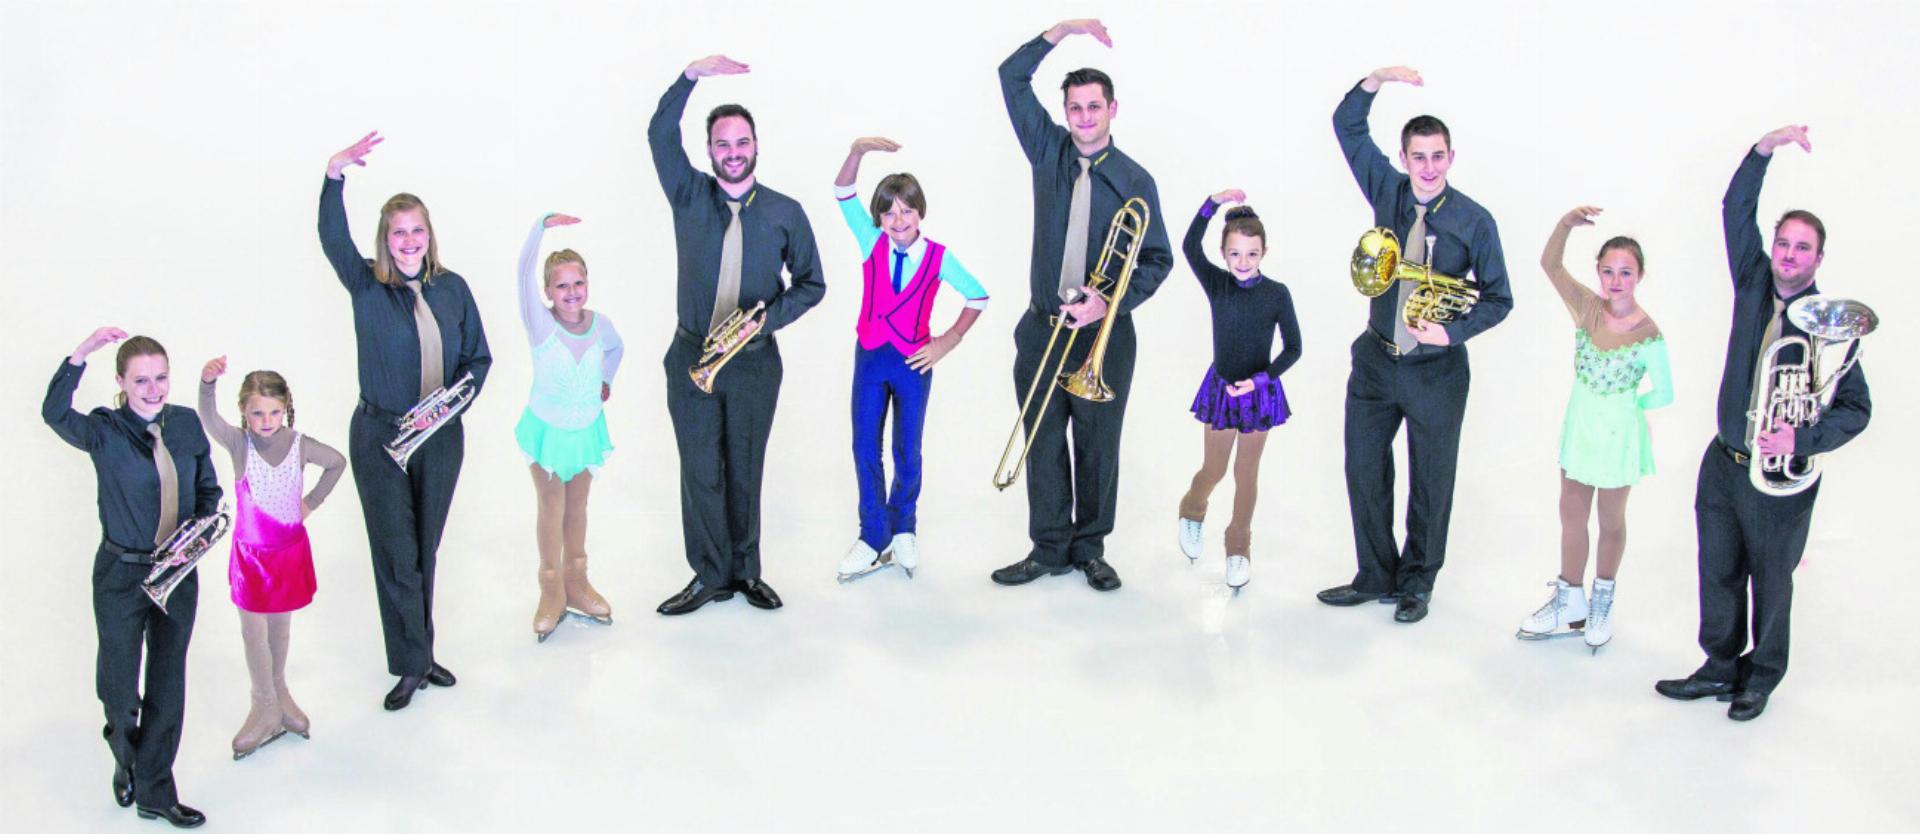 Brass Band und Eiskunstlauf in einer Show vereint – das ist Brass on Ice. Fotos: zVg